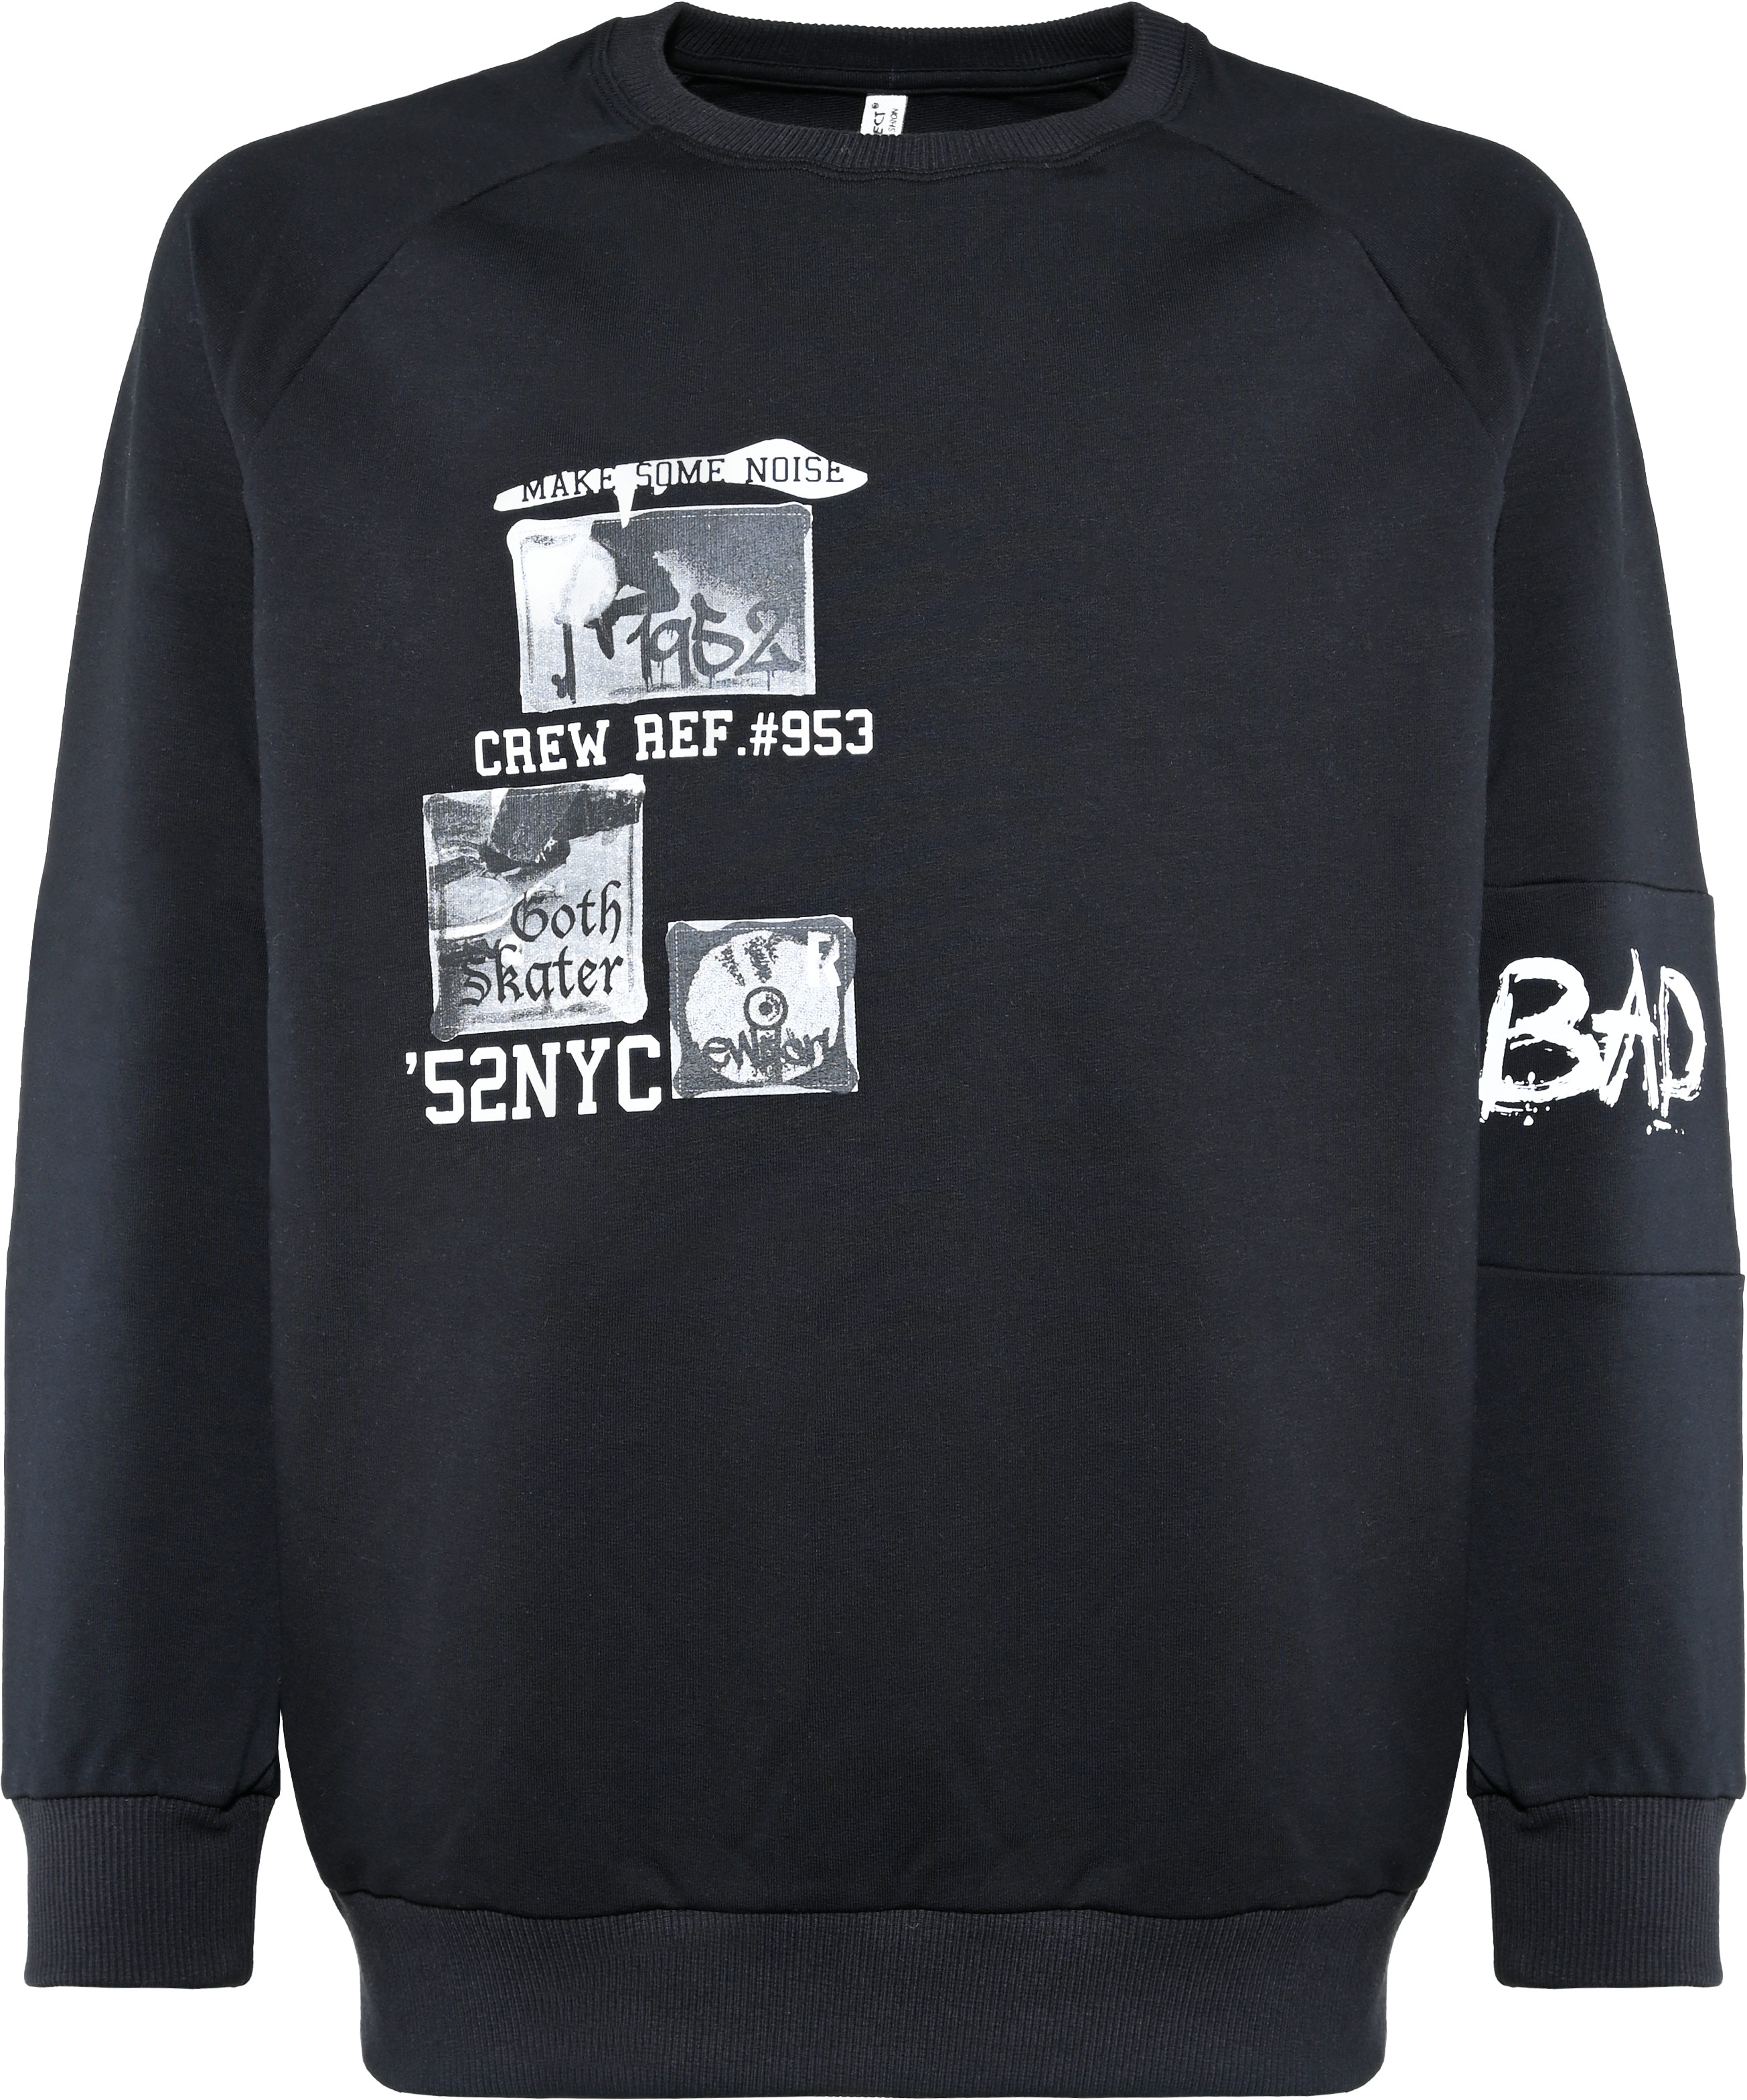 6318-Boys Oversized Sweatshirt -Bad Boys